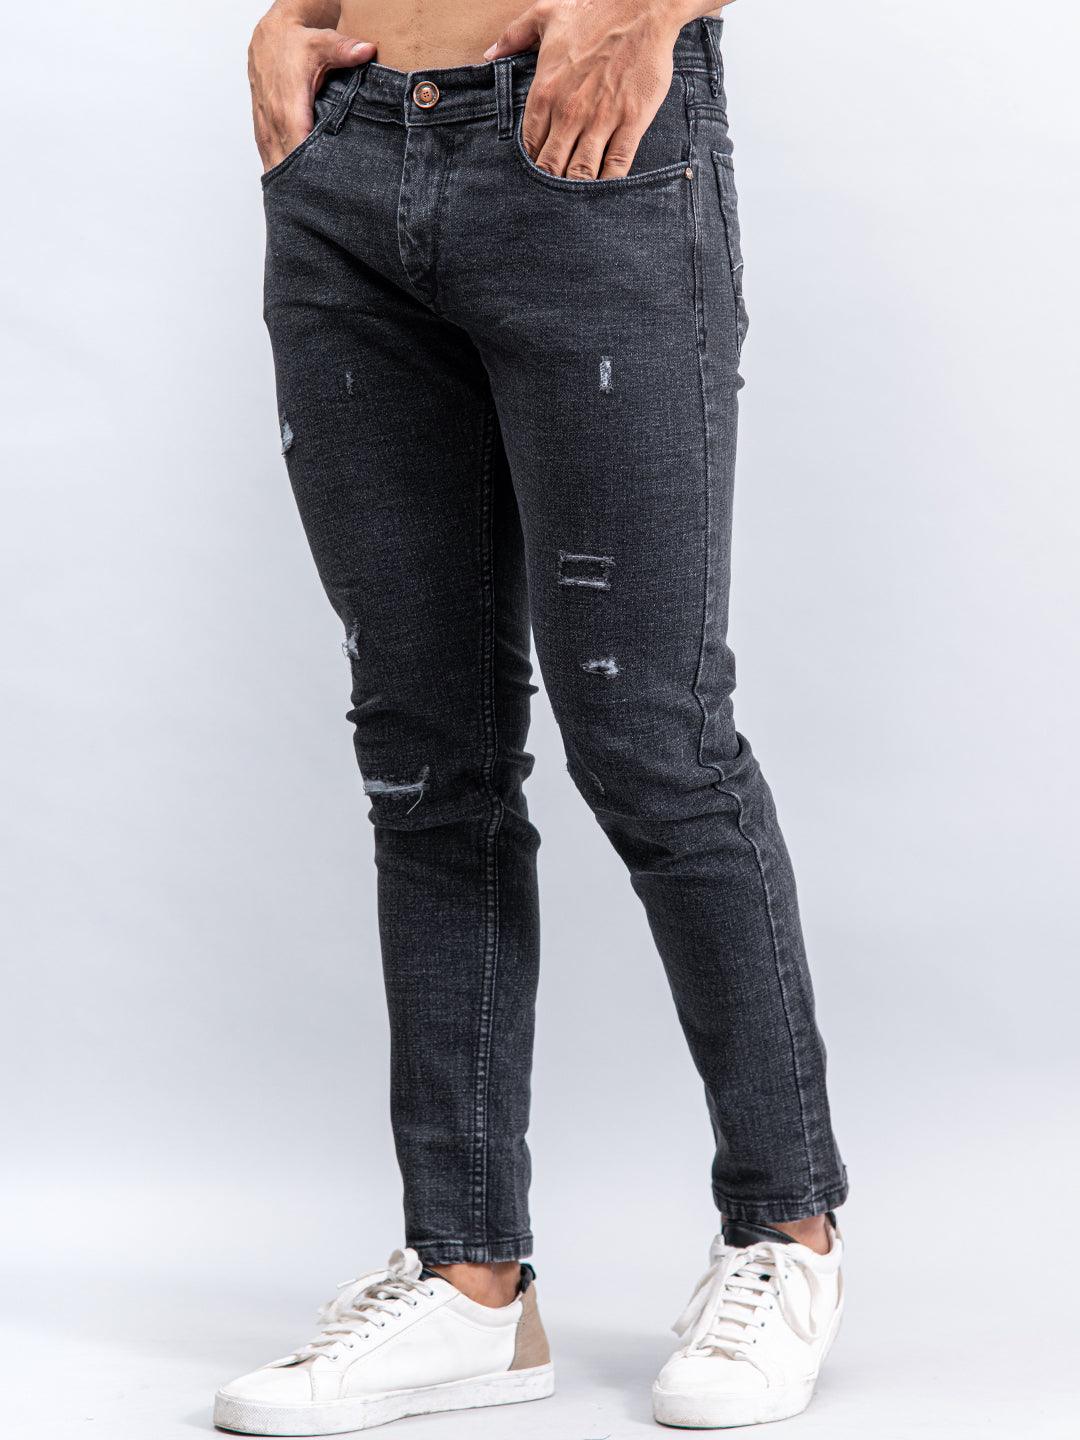 Grey Denim Ankle Length Stretchable Men's Jeans - Tistabene - Tistabene